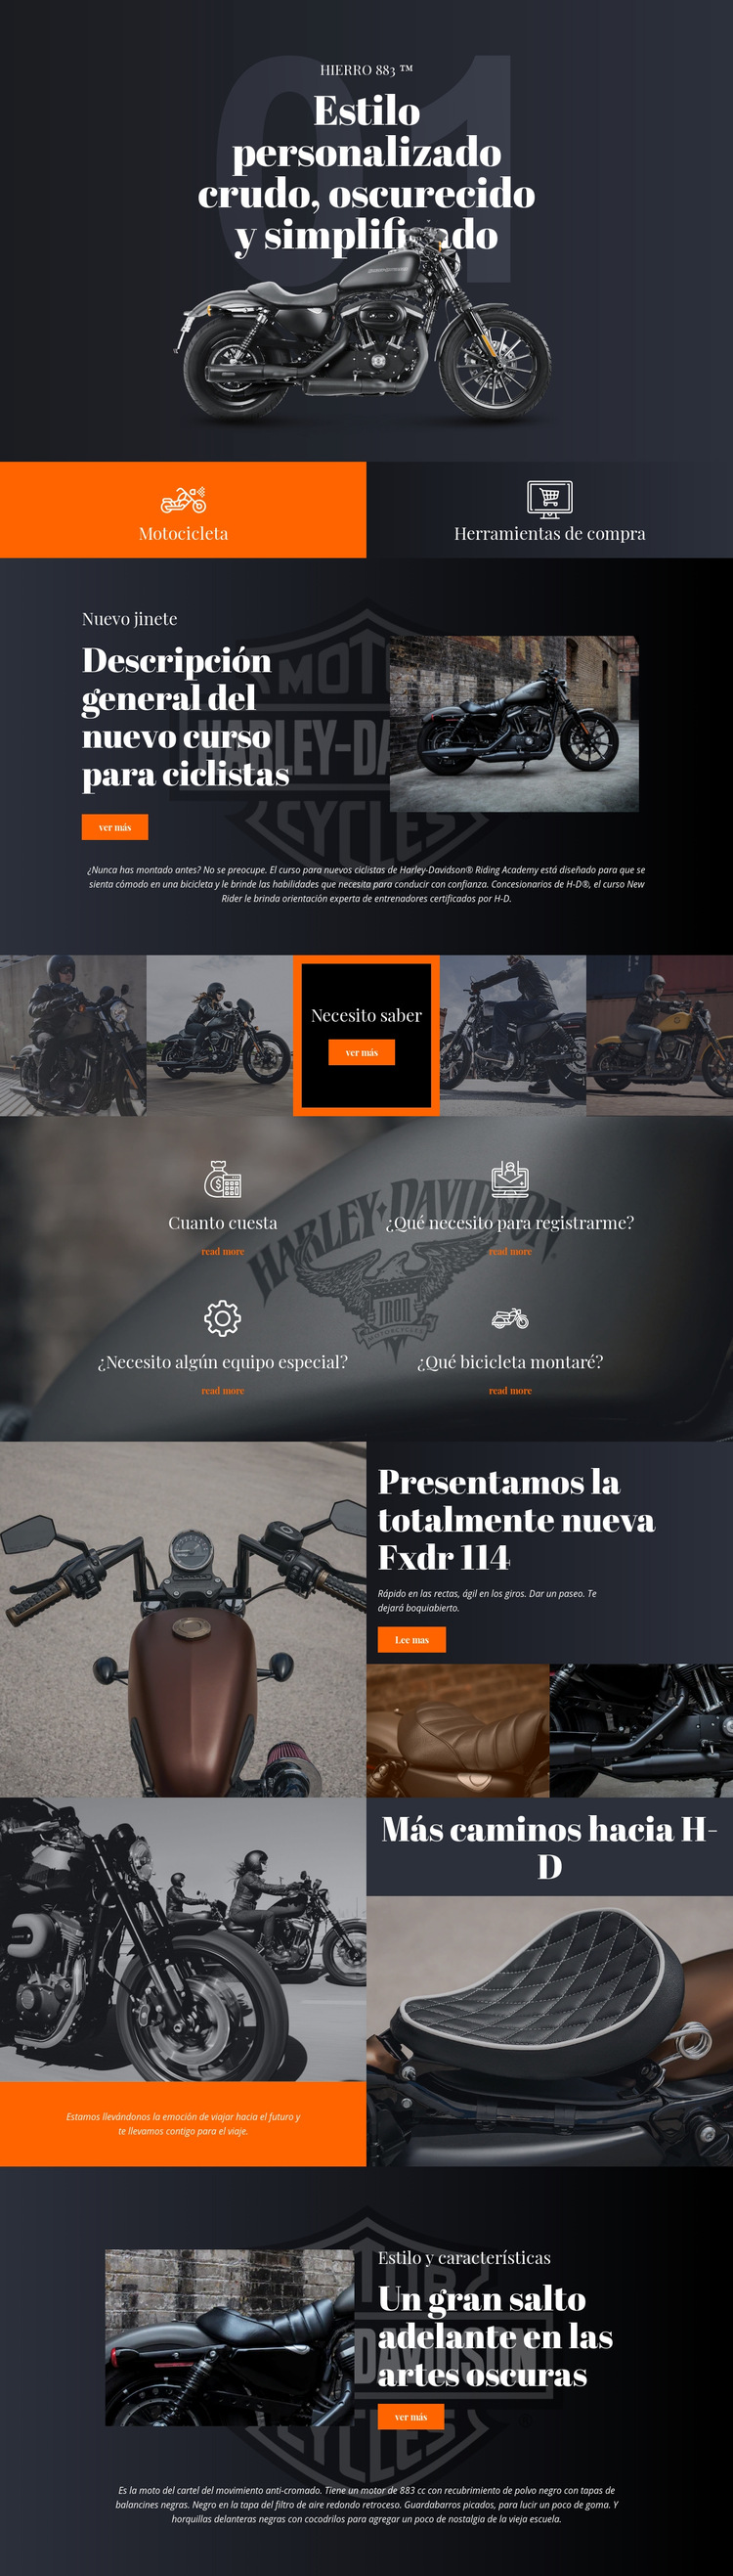 Harley Davidson Plantilla de sitio web